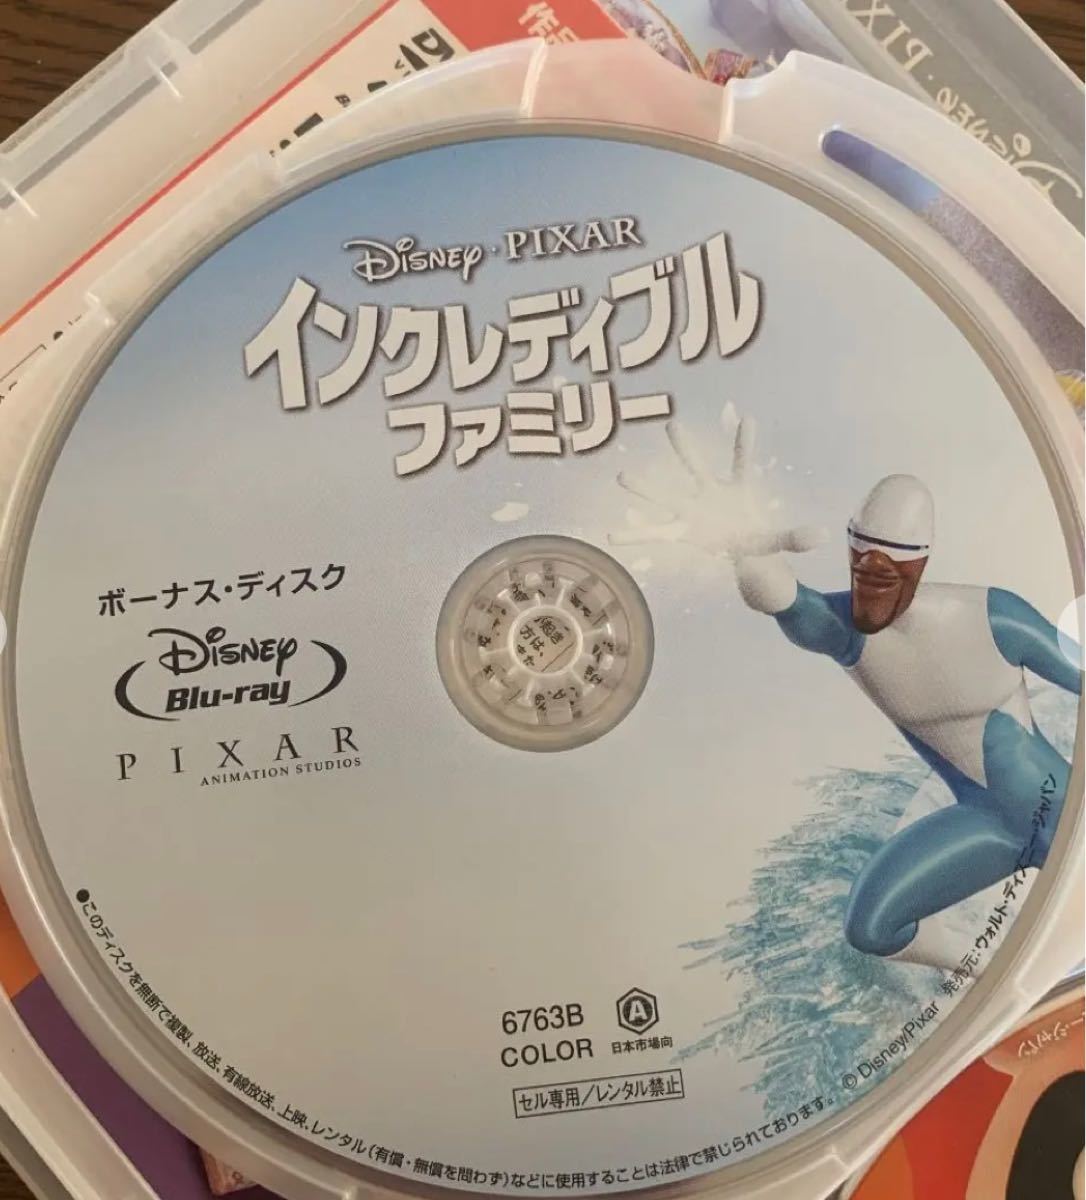 インクレディブル・ファミリー Blu-ray